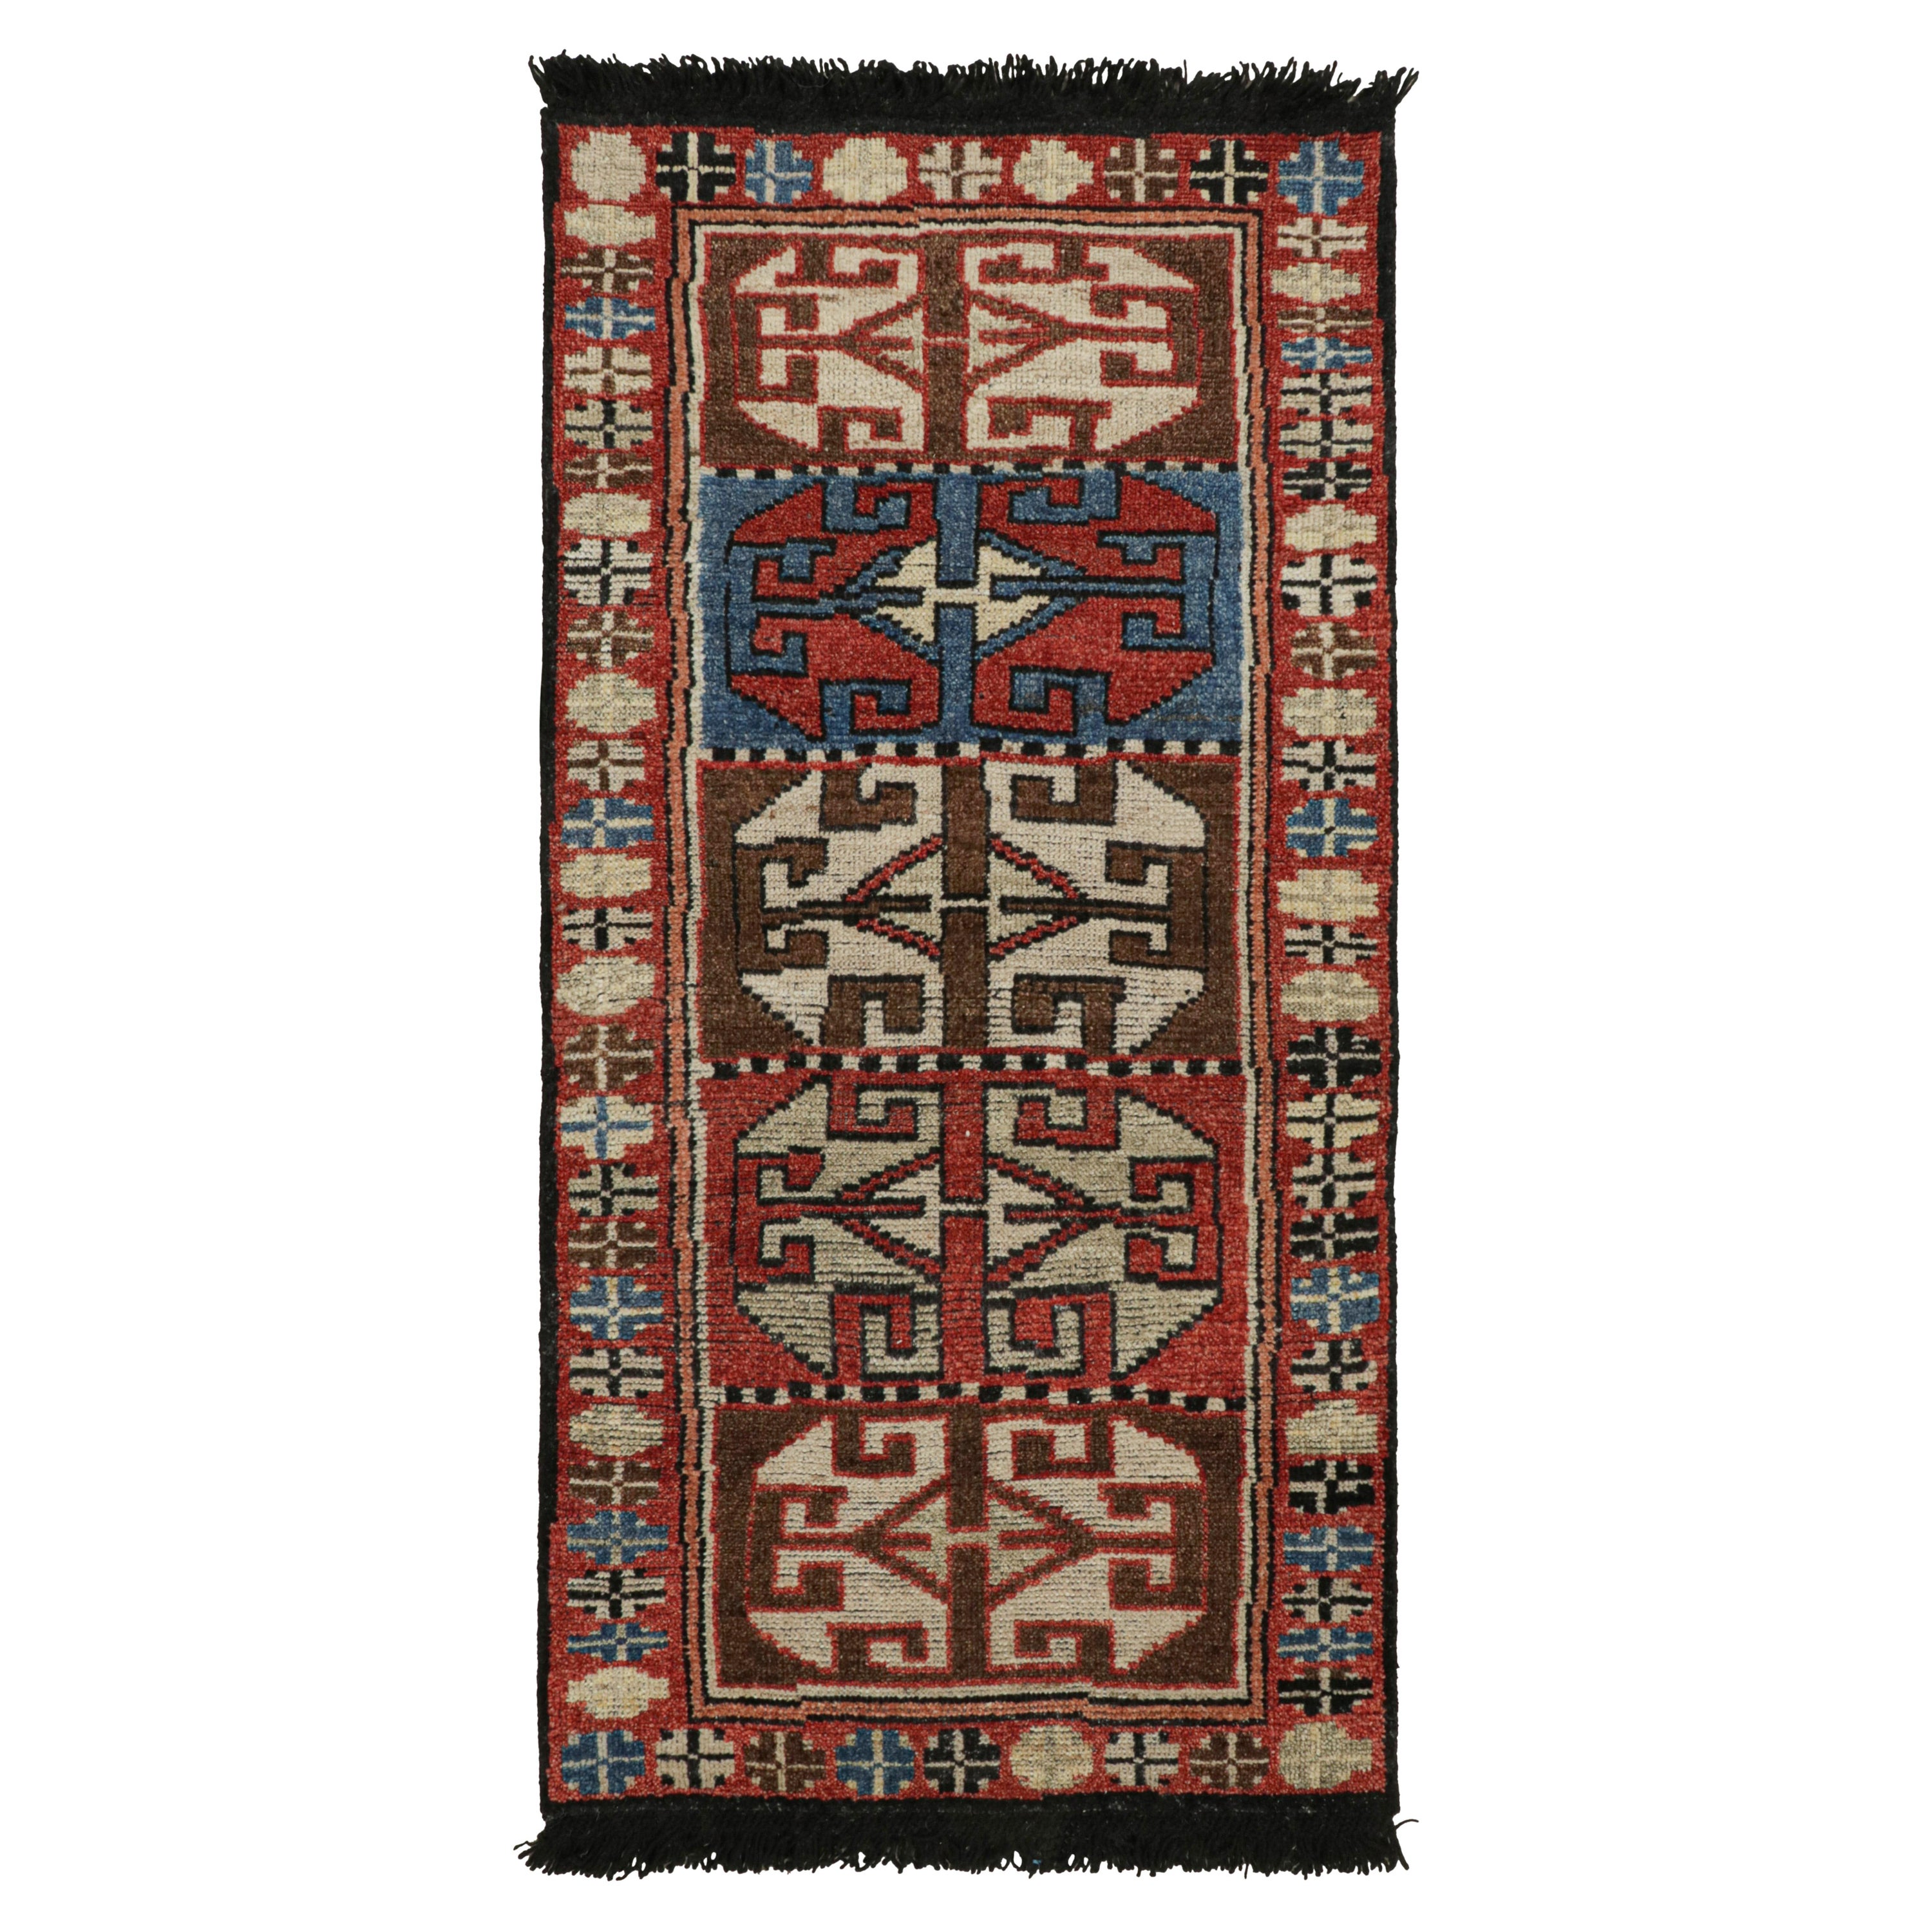 Rug & Kilim's Antique Tribal Style rug in Red, Blue & Brown Patterns (tapis ancien de style tribal à motifs rouges, bleus et bruns)